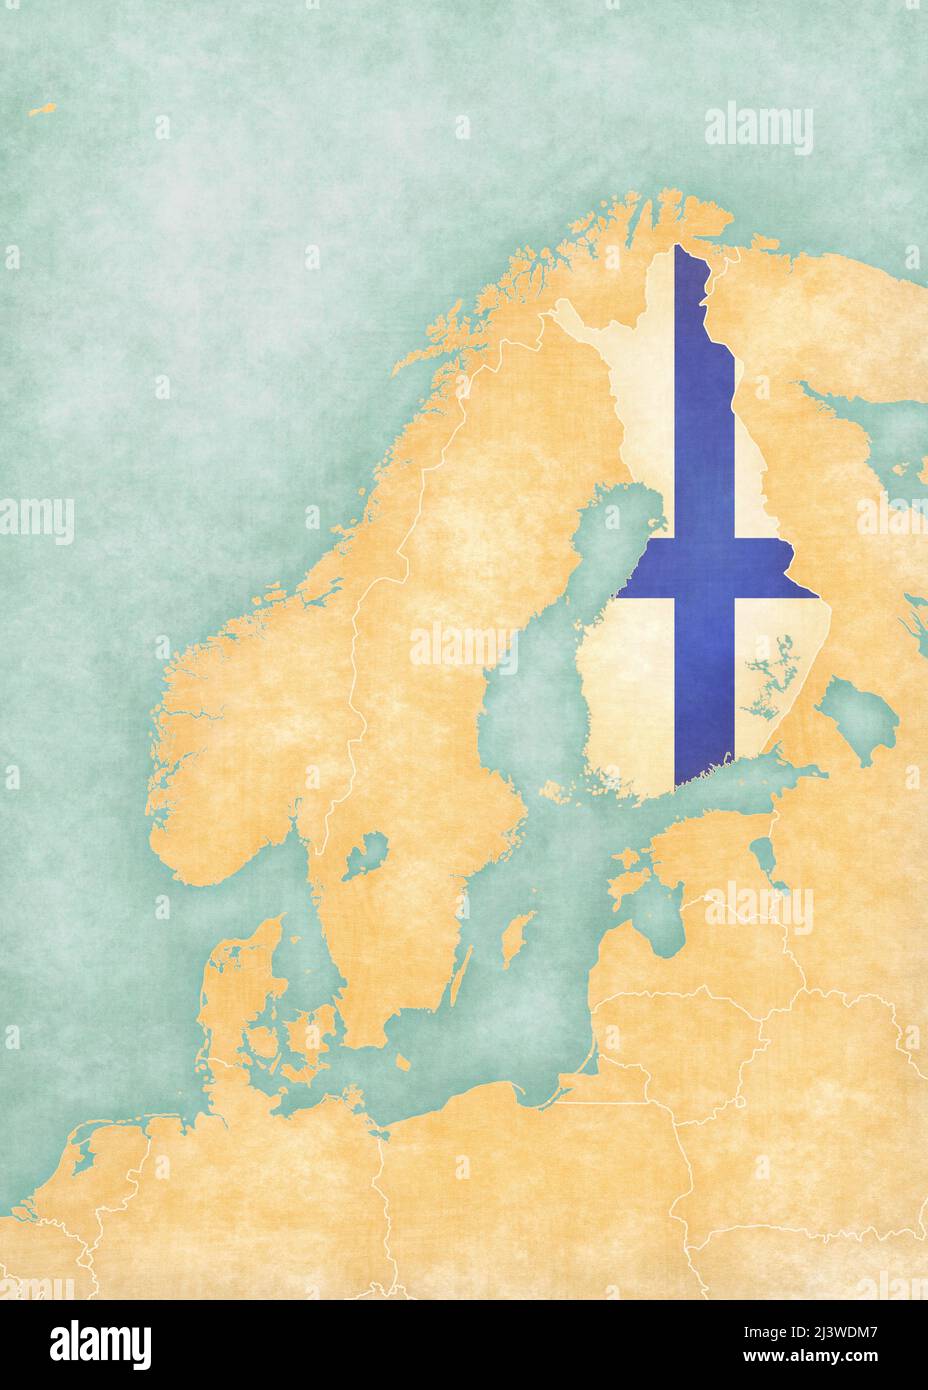 Finlandia (bandiera finlandese) sulla mappa della Scandinavia. La mappa è in morbido grunge e vintage stile, come la pittura acquerello su carta vecchia. Foto Stock